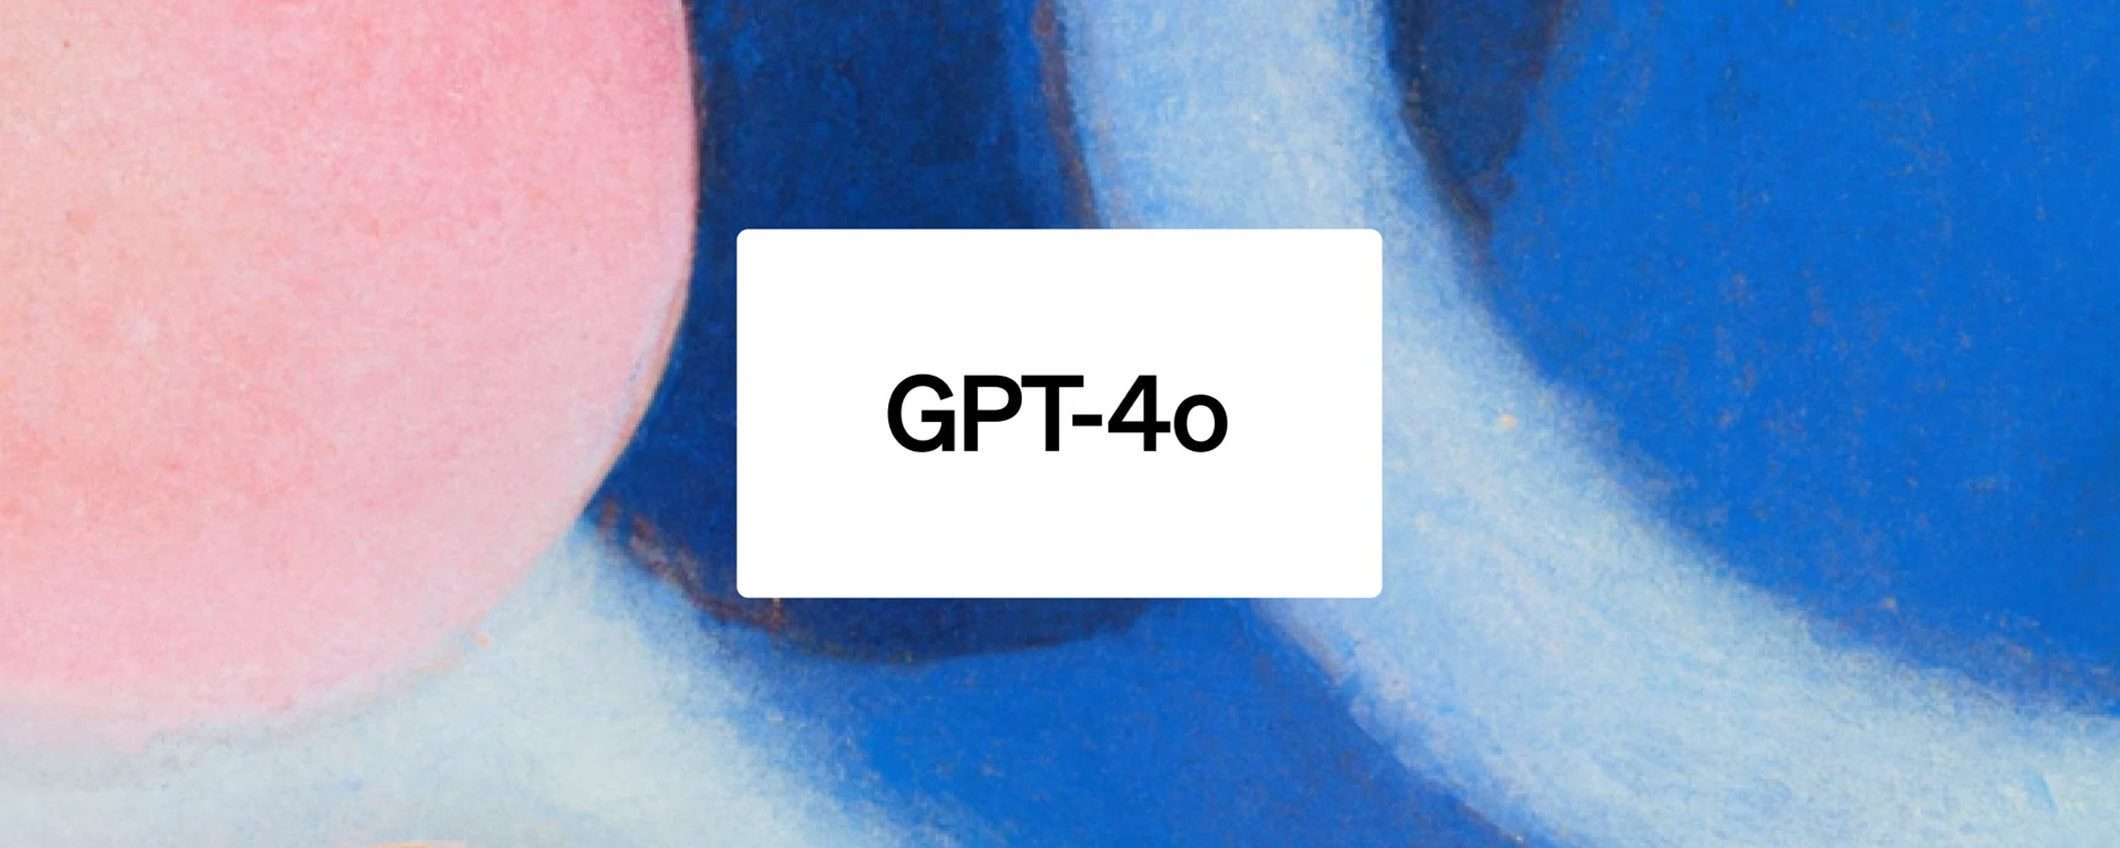 GPT-4o è quel che mancava a OpenAI?